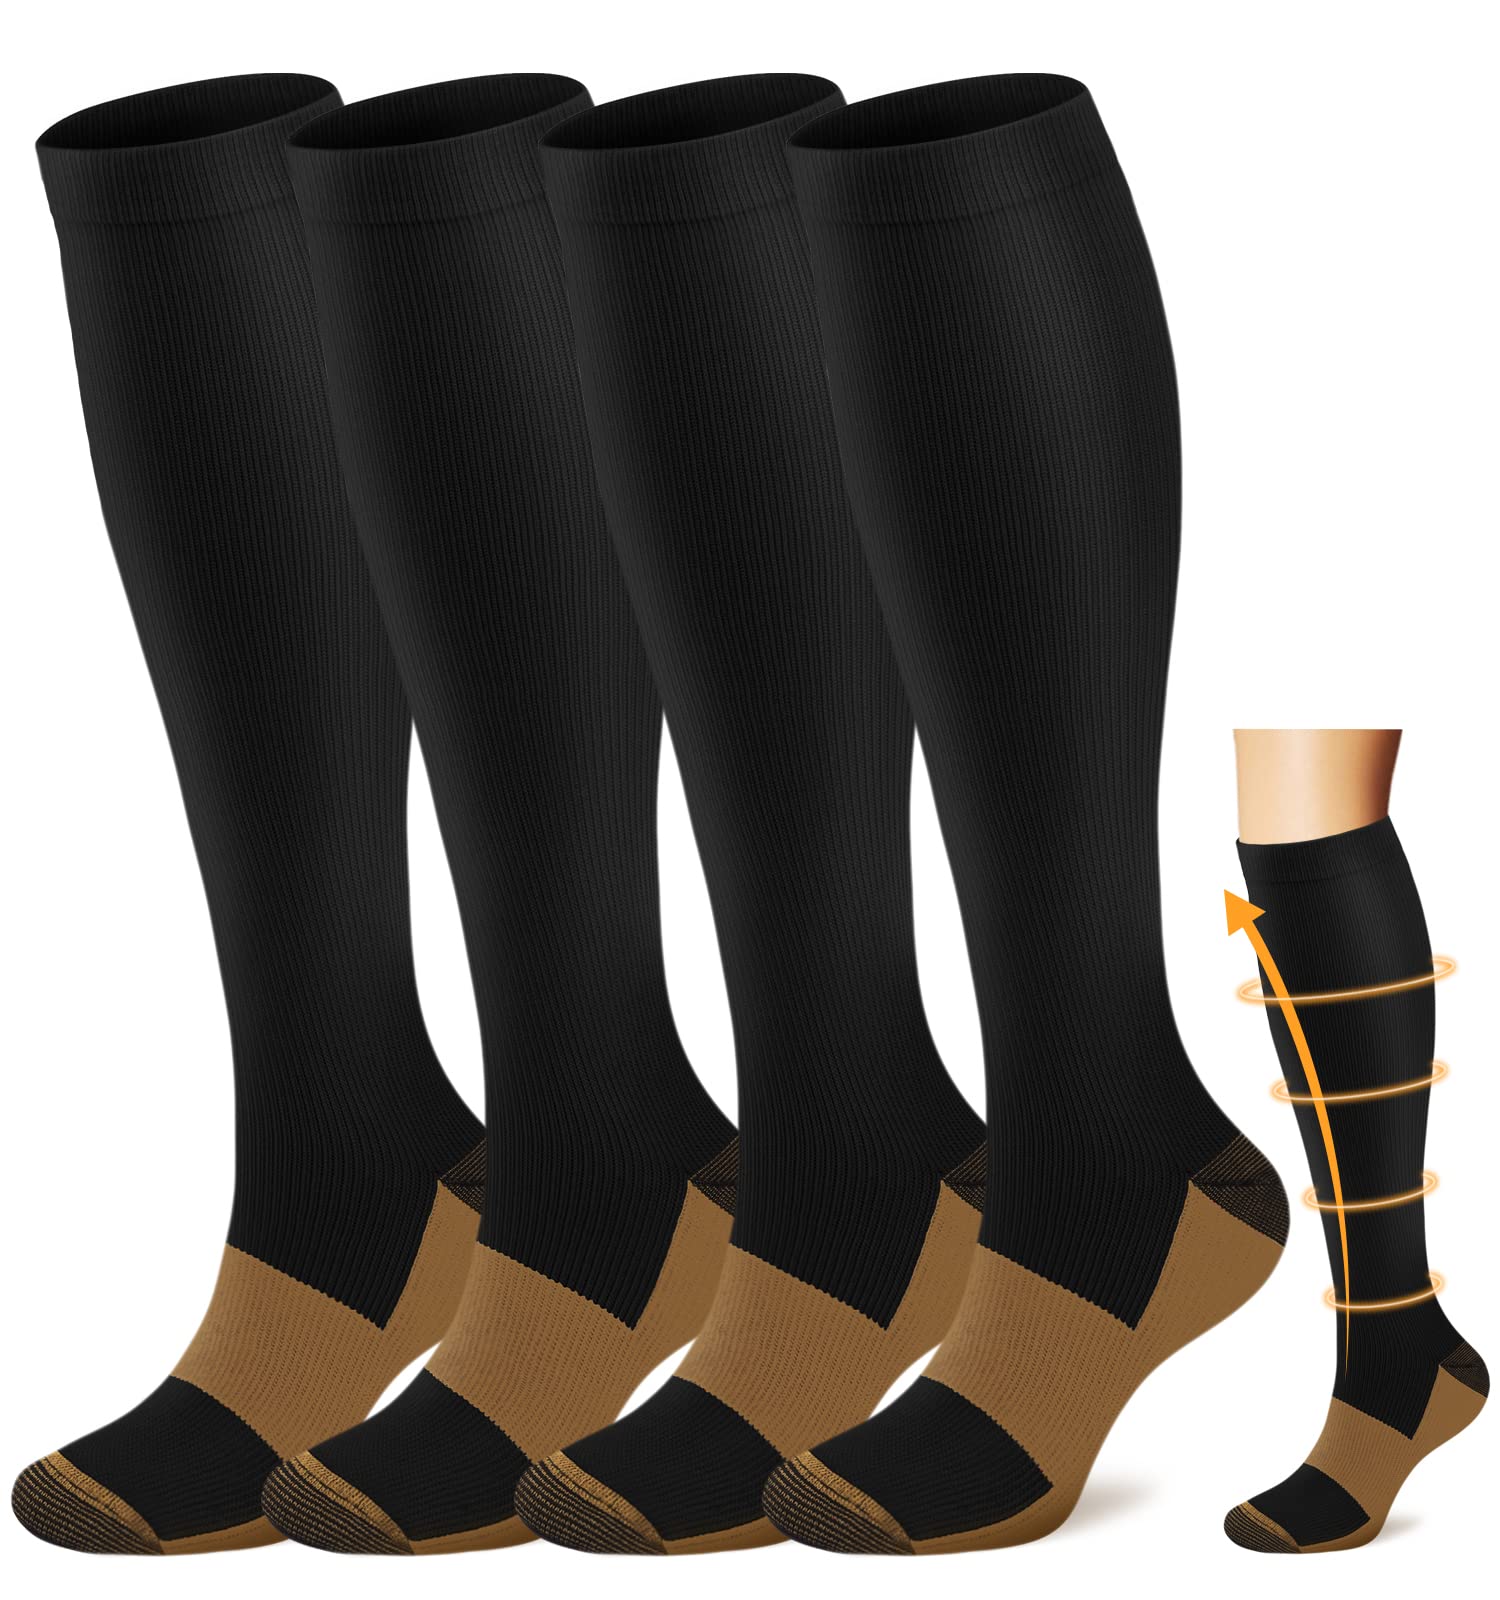 4 Best Compression Socks for Nurses